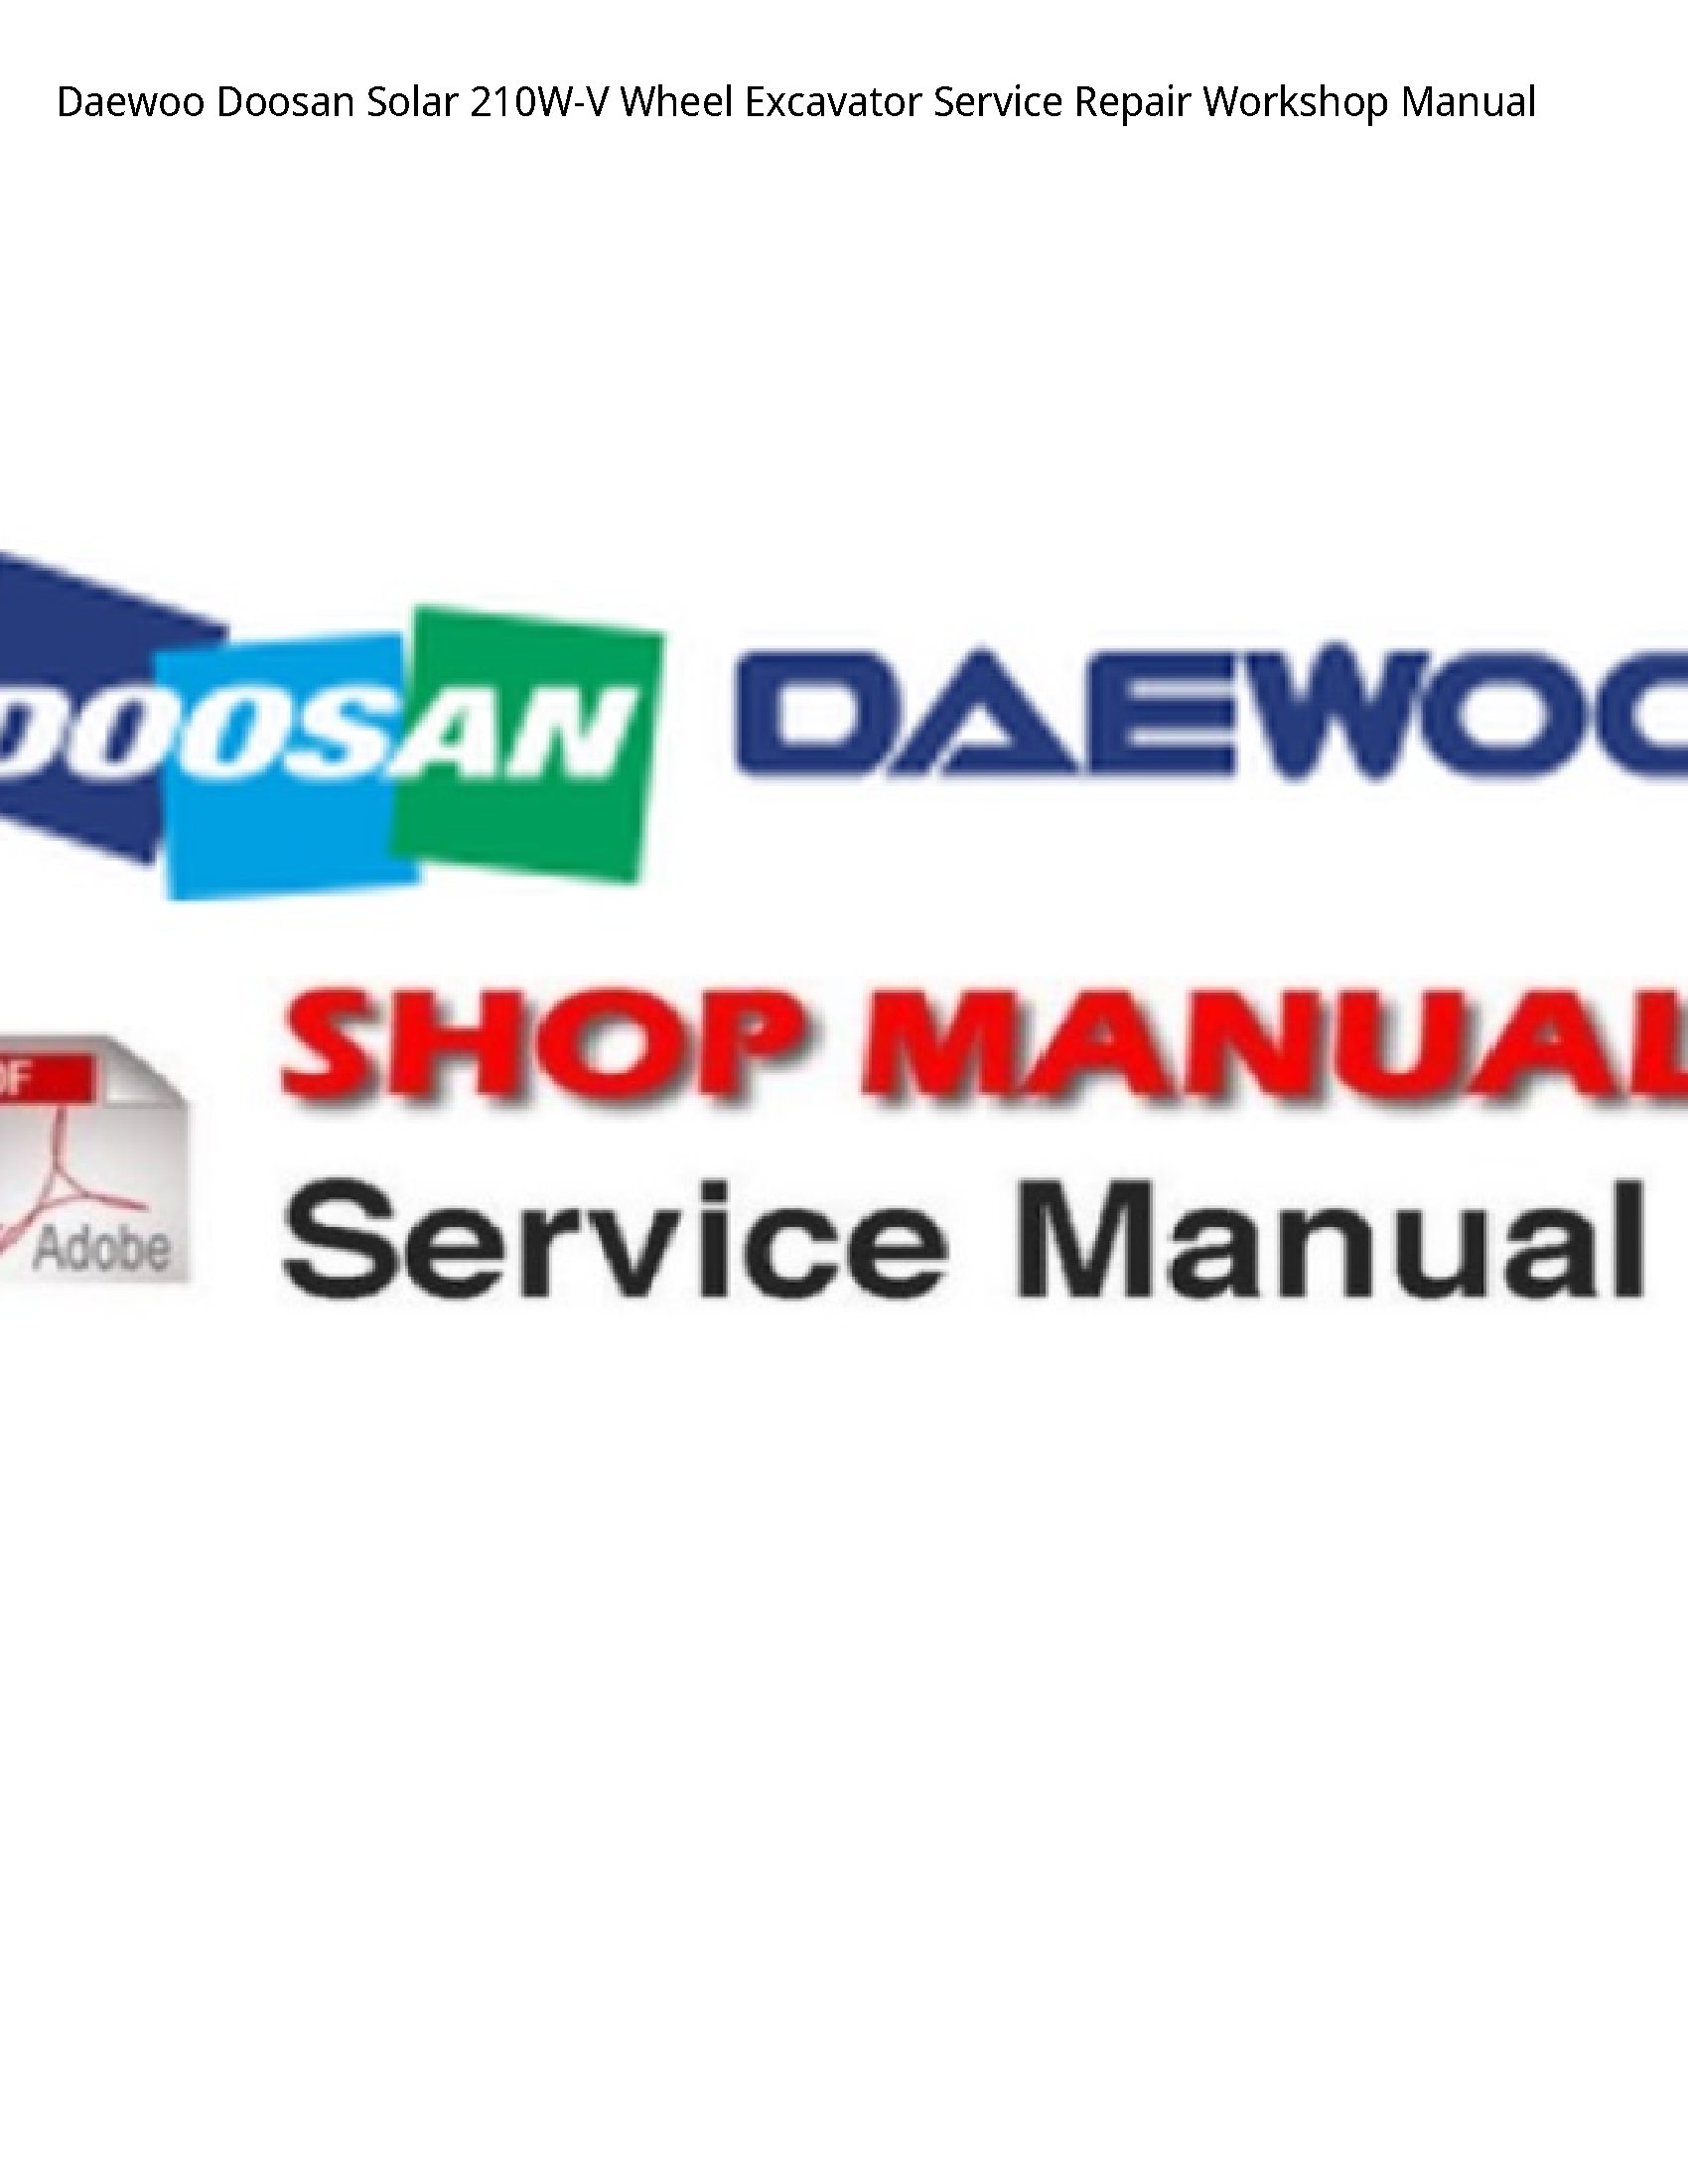 Daewoo Doosan 210W-V Solar Wheel Excavator manual